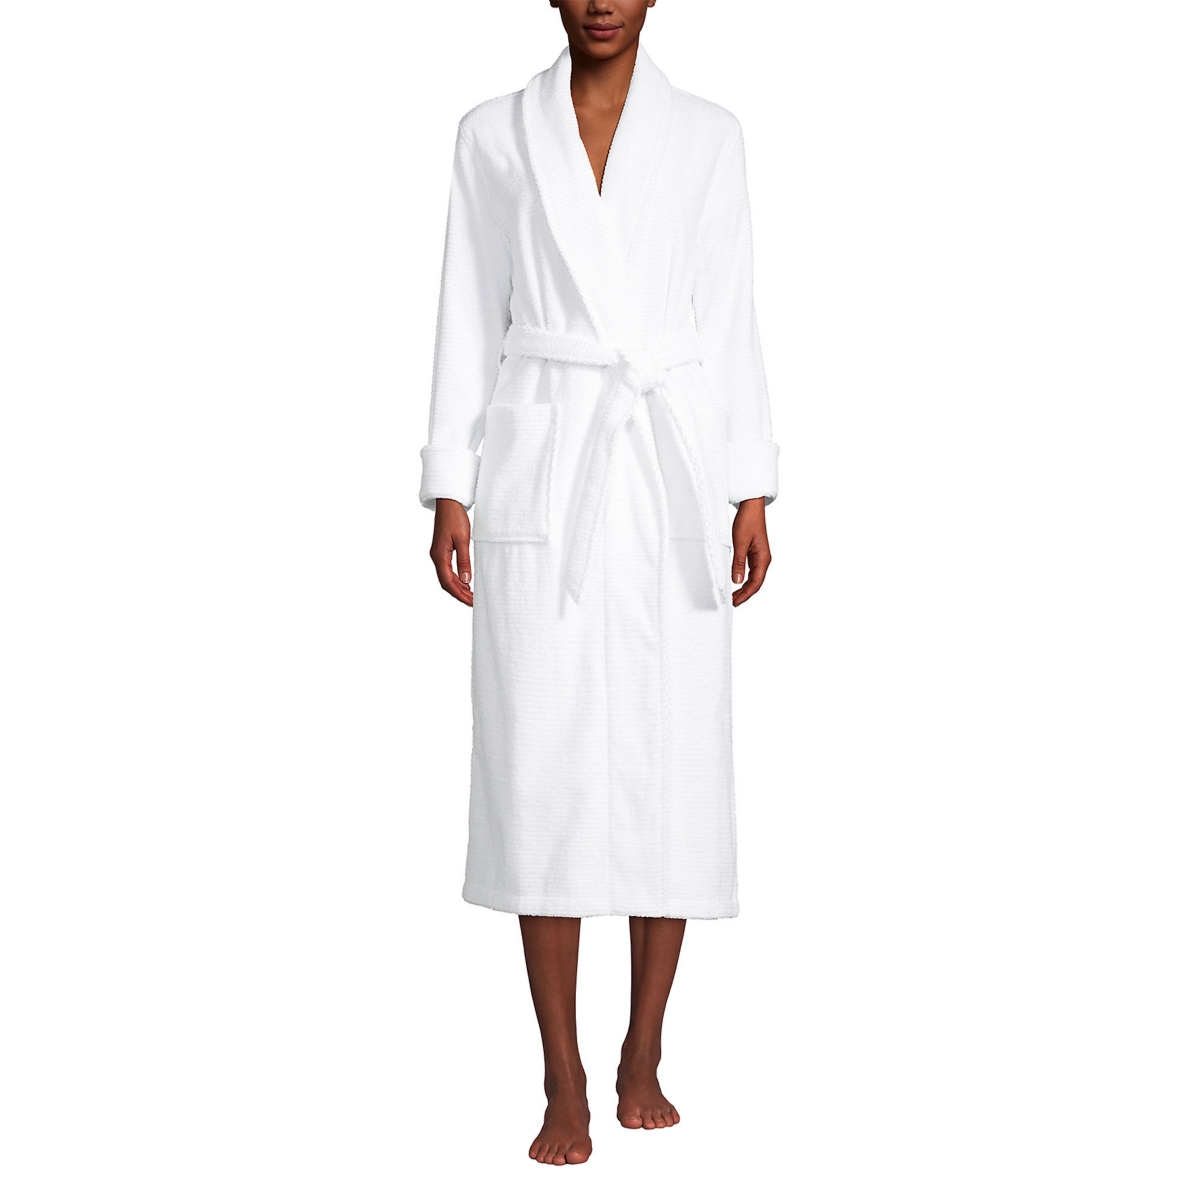 Women's Cotton Terry Long Spa Bath Robe - Deep sea navy